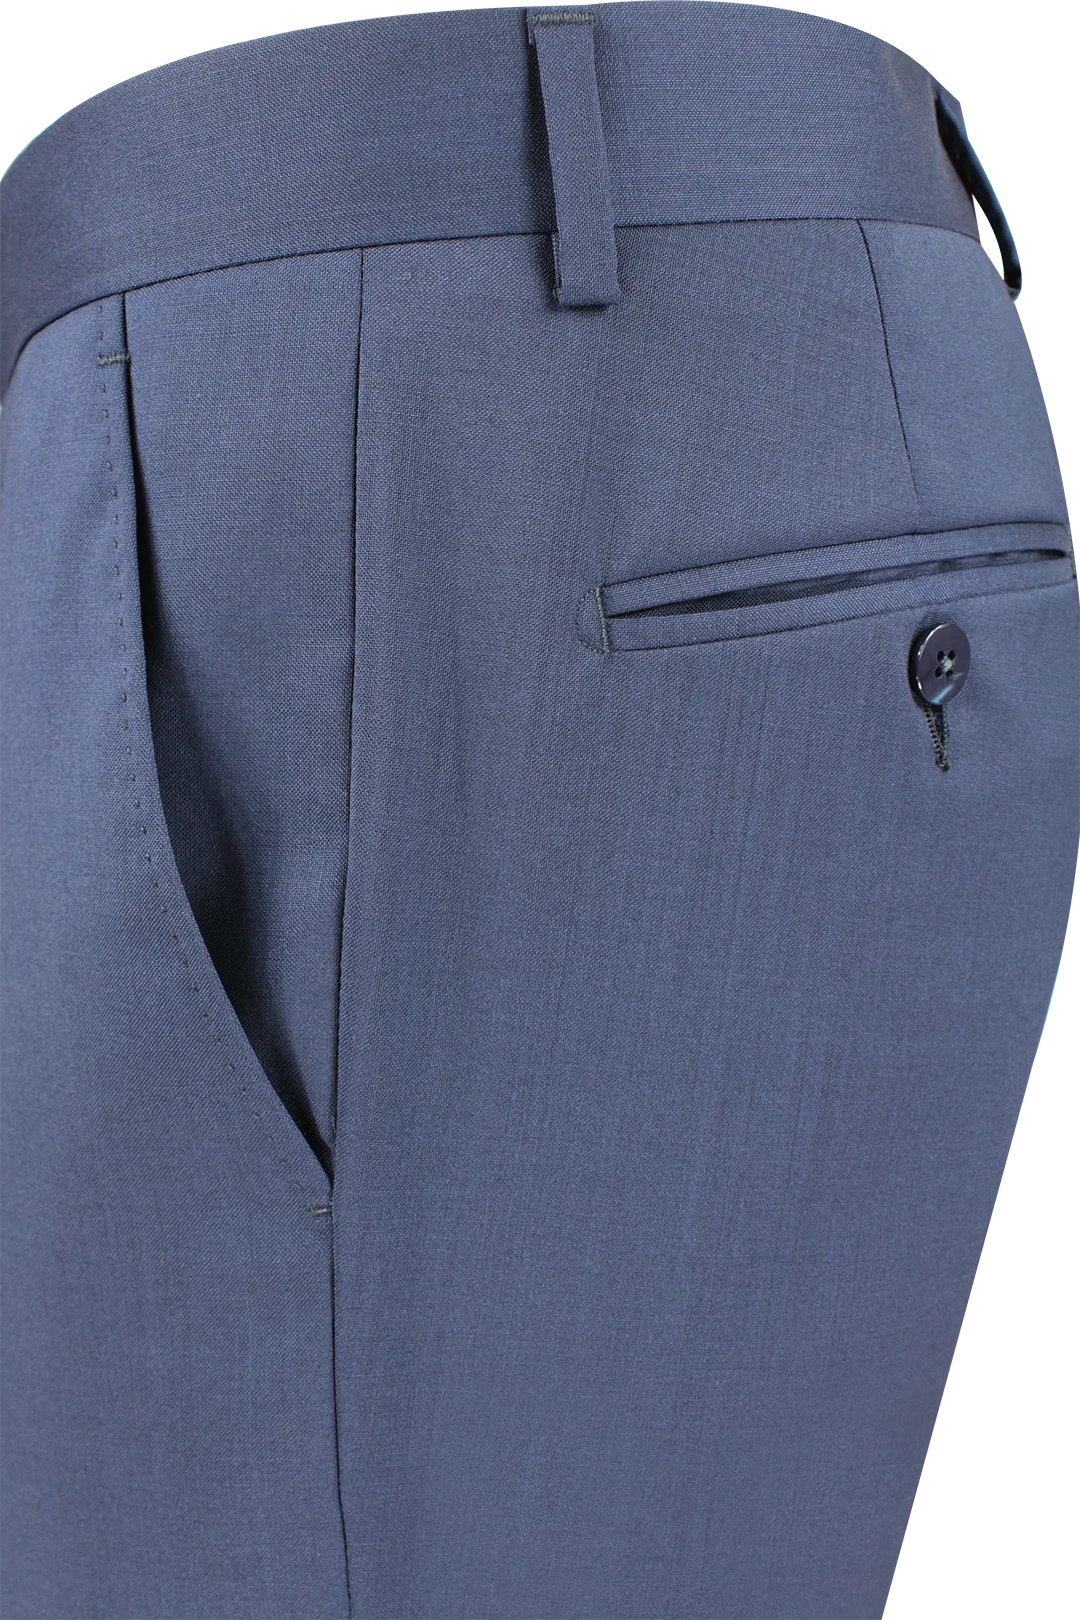 Pantalone in tela di lana vergine bluette lato